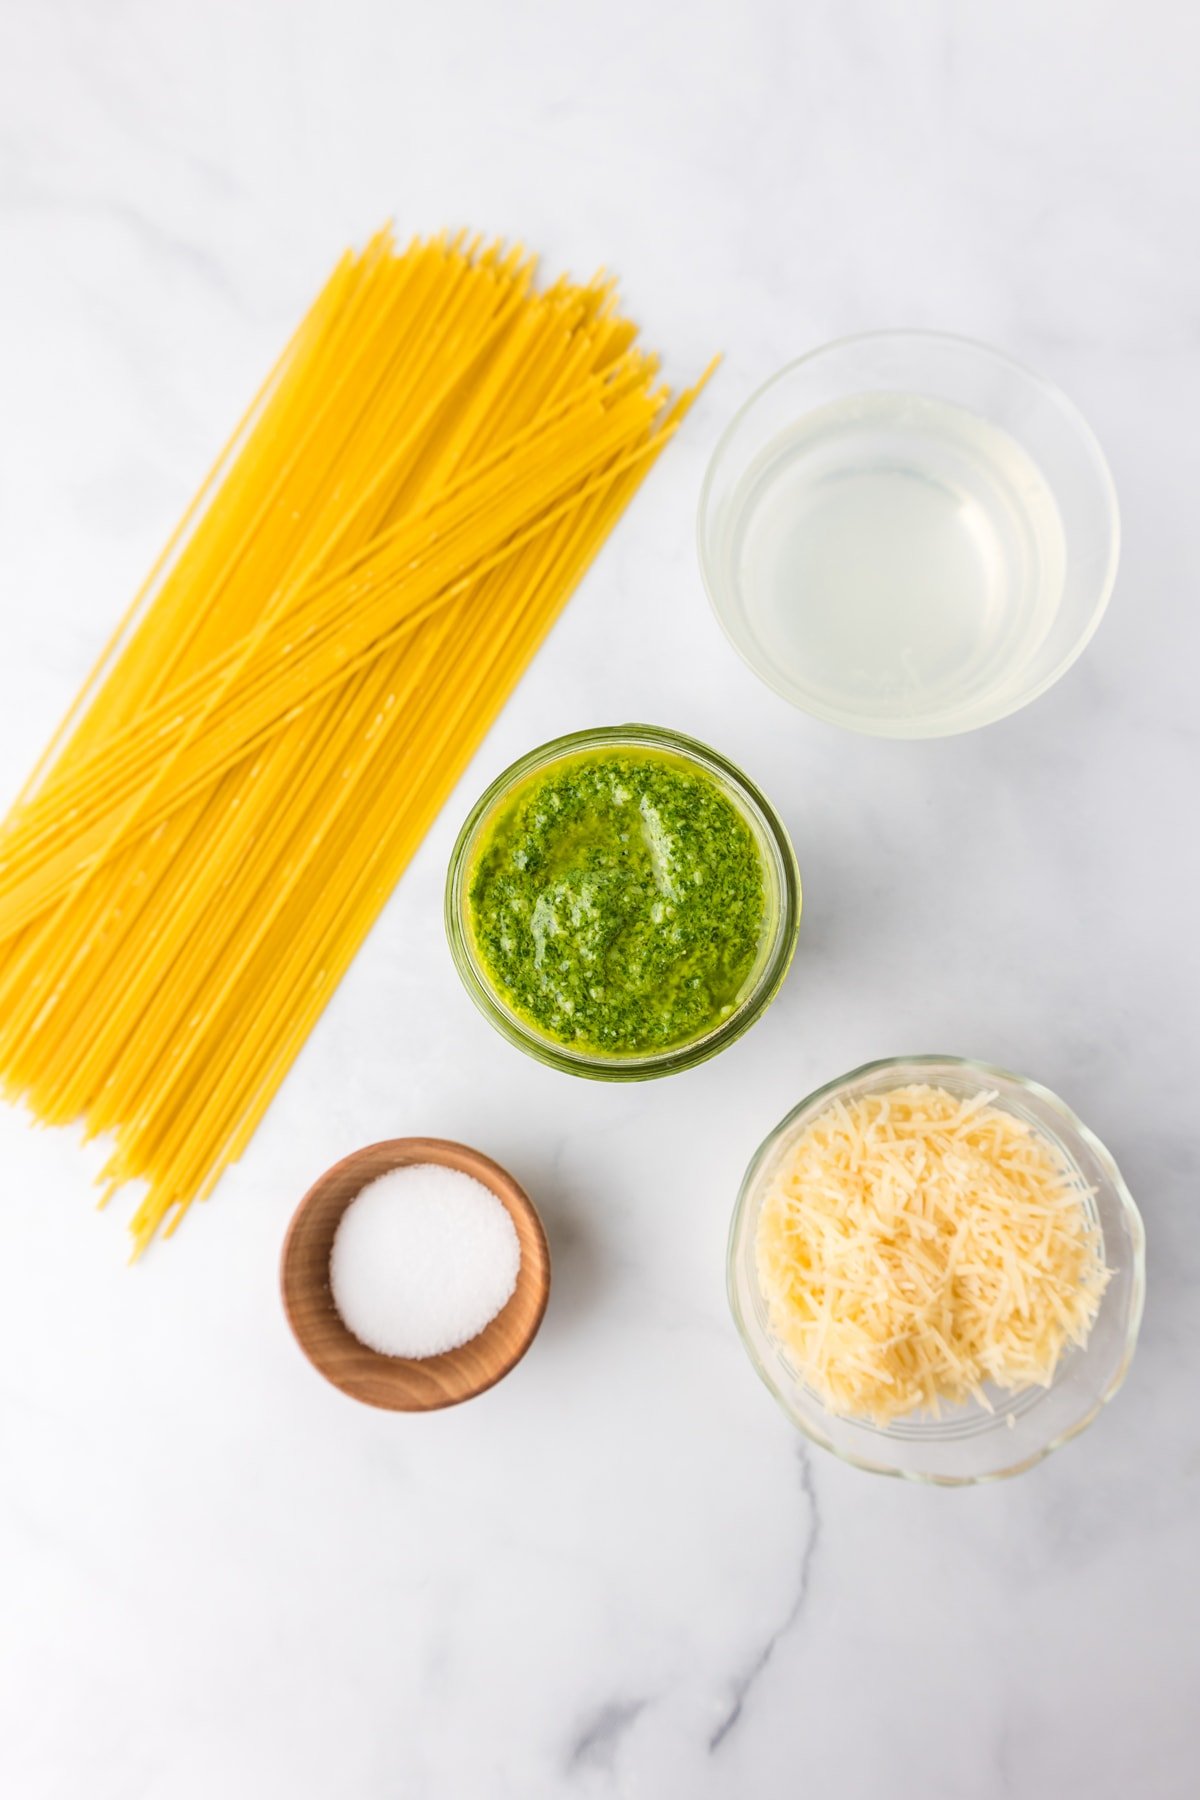 Pesto pasta ingredients